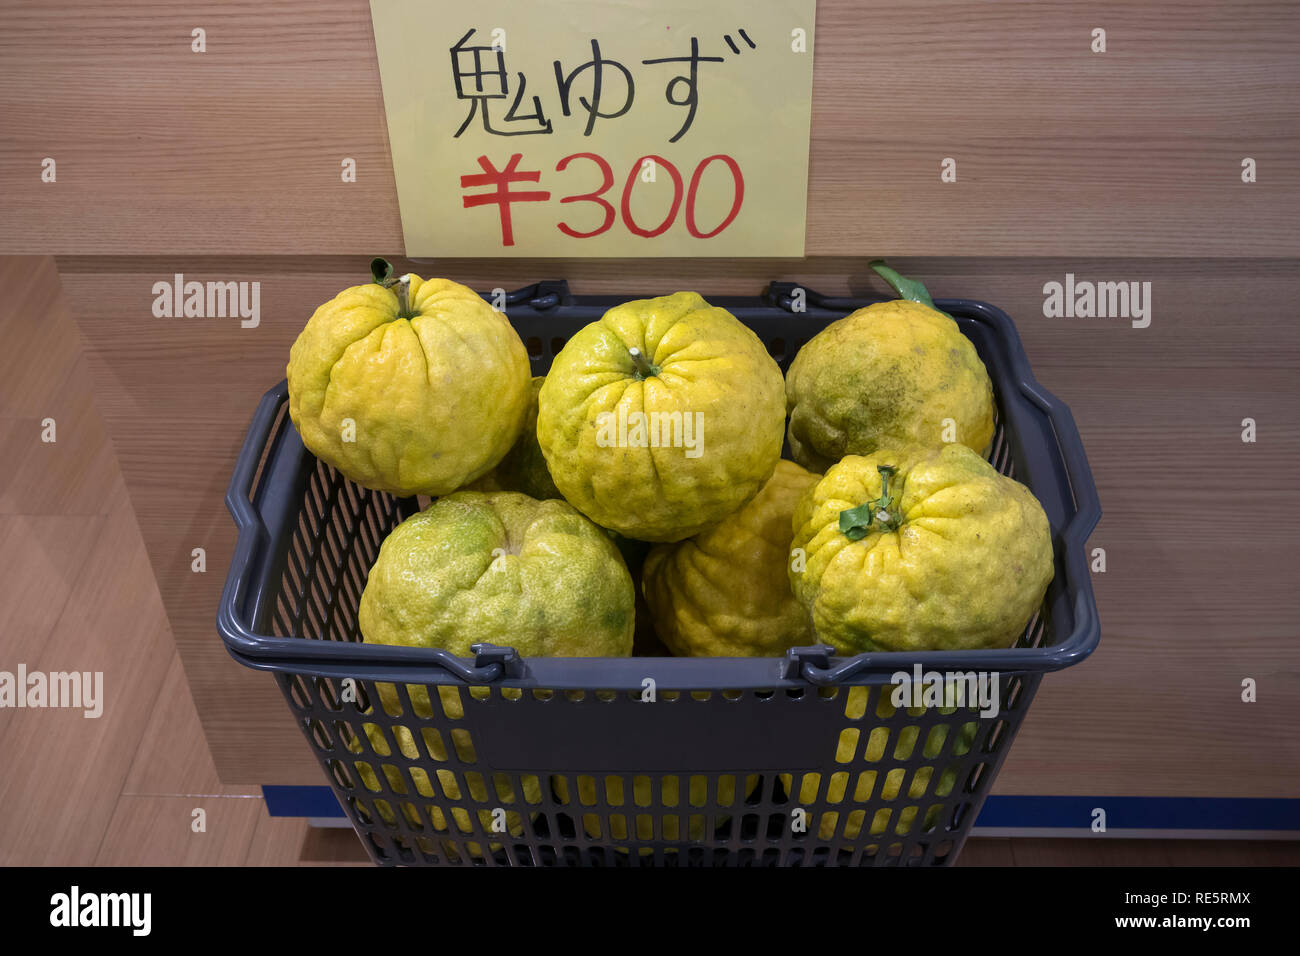 Beppu, Giappone - 2 Novembre 2018: Fresco grande Oni yuzu, Citrus grandis in un cesto in plastica per la vendita Foto Stock